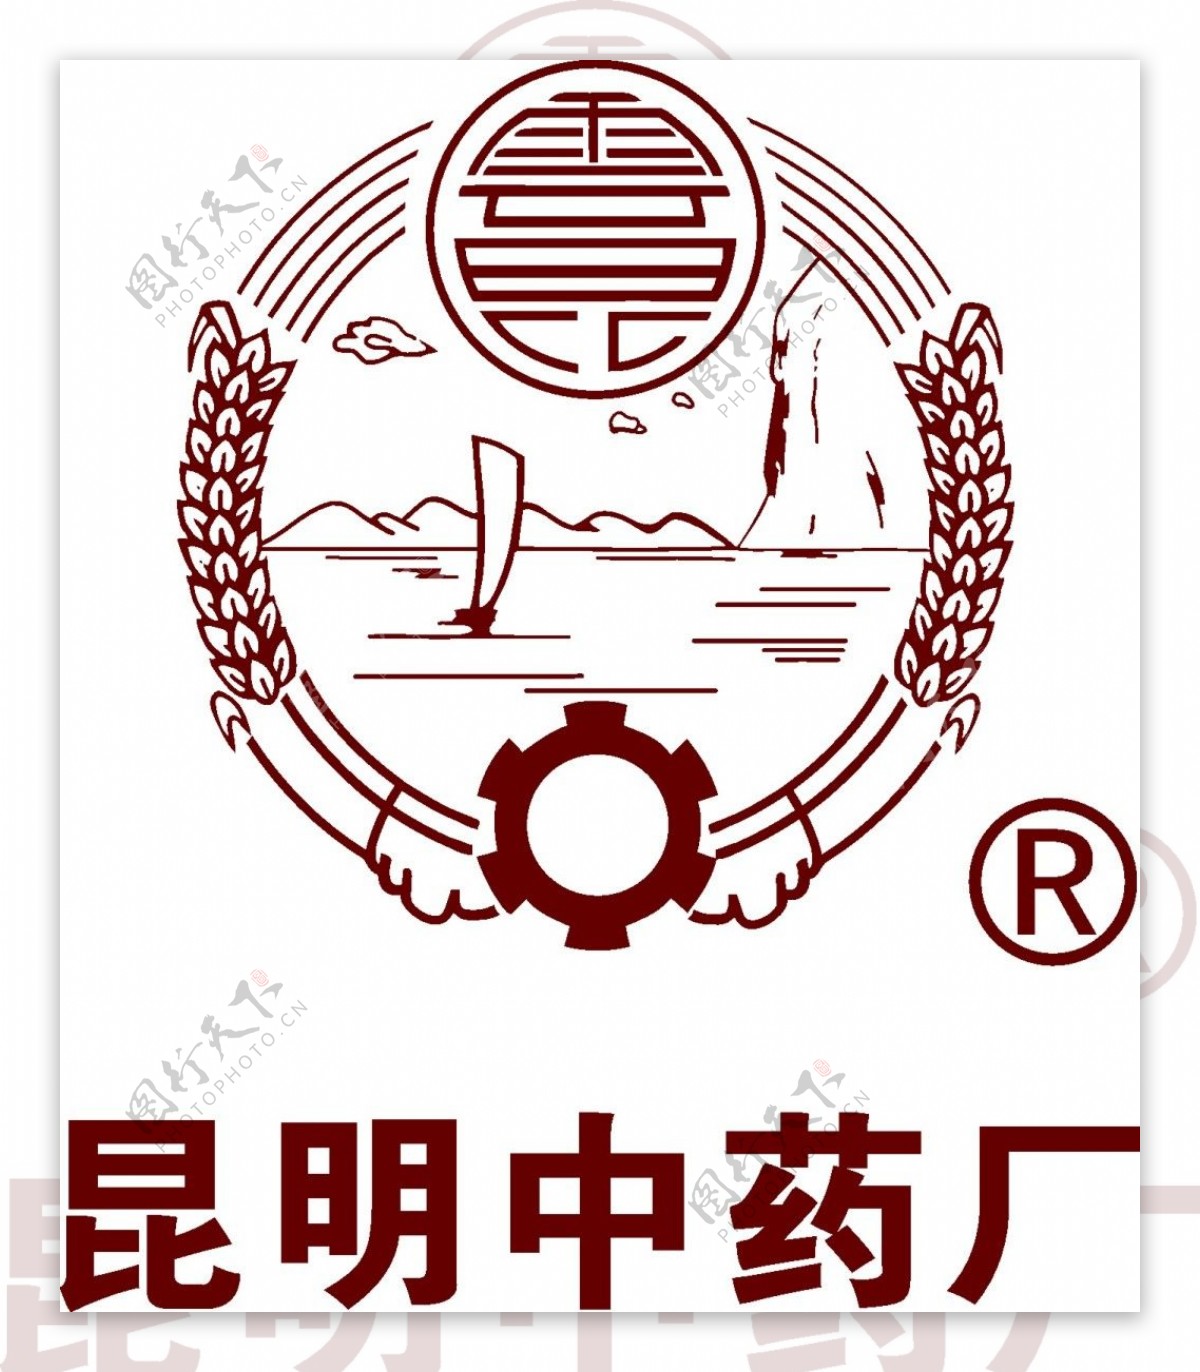 昆明中药厂logo素材矢量图LOGO设计